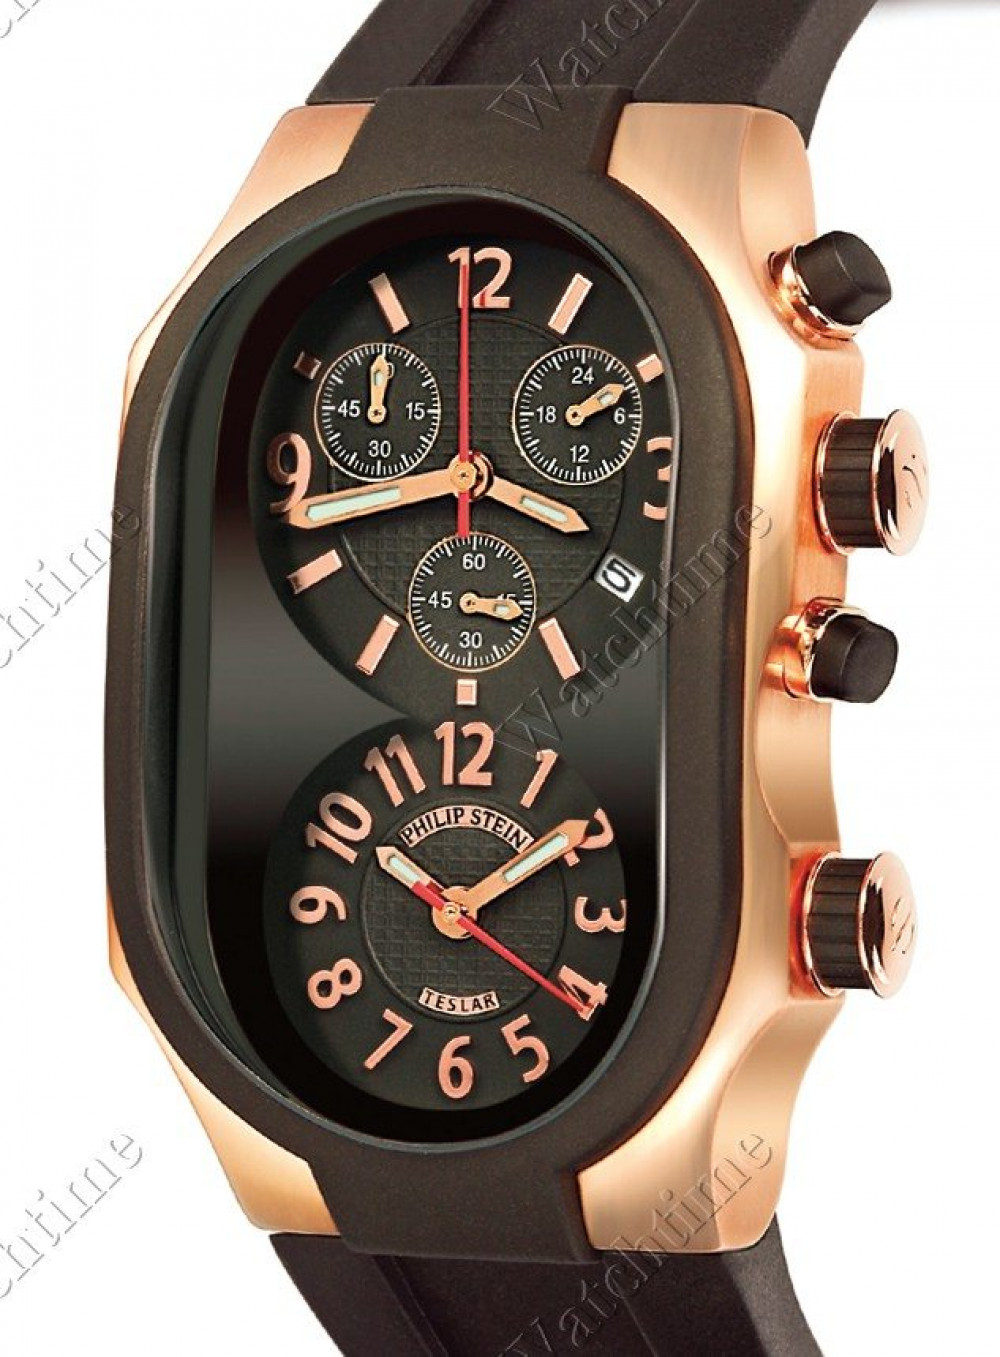 Zegarek firmy Philipp Stein, model Sport Chrono